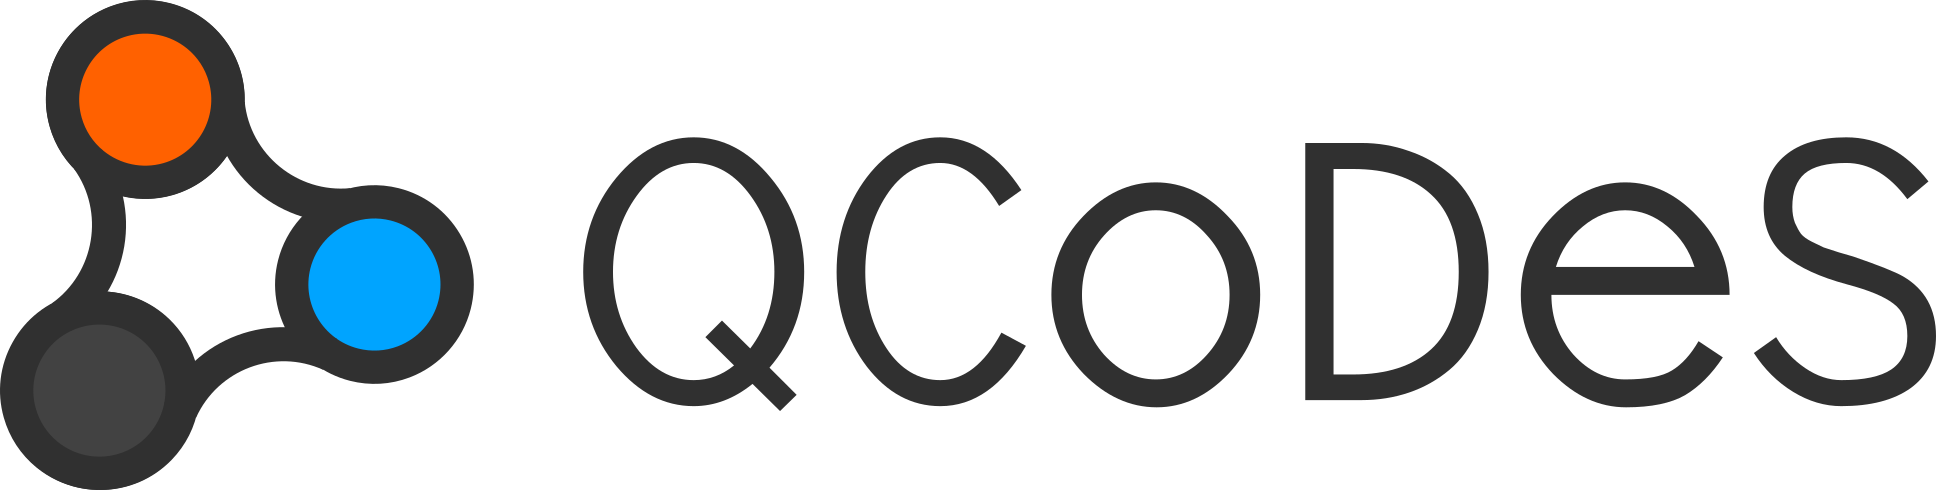 qcodes logo